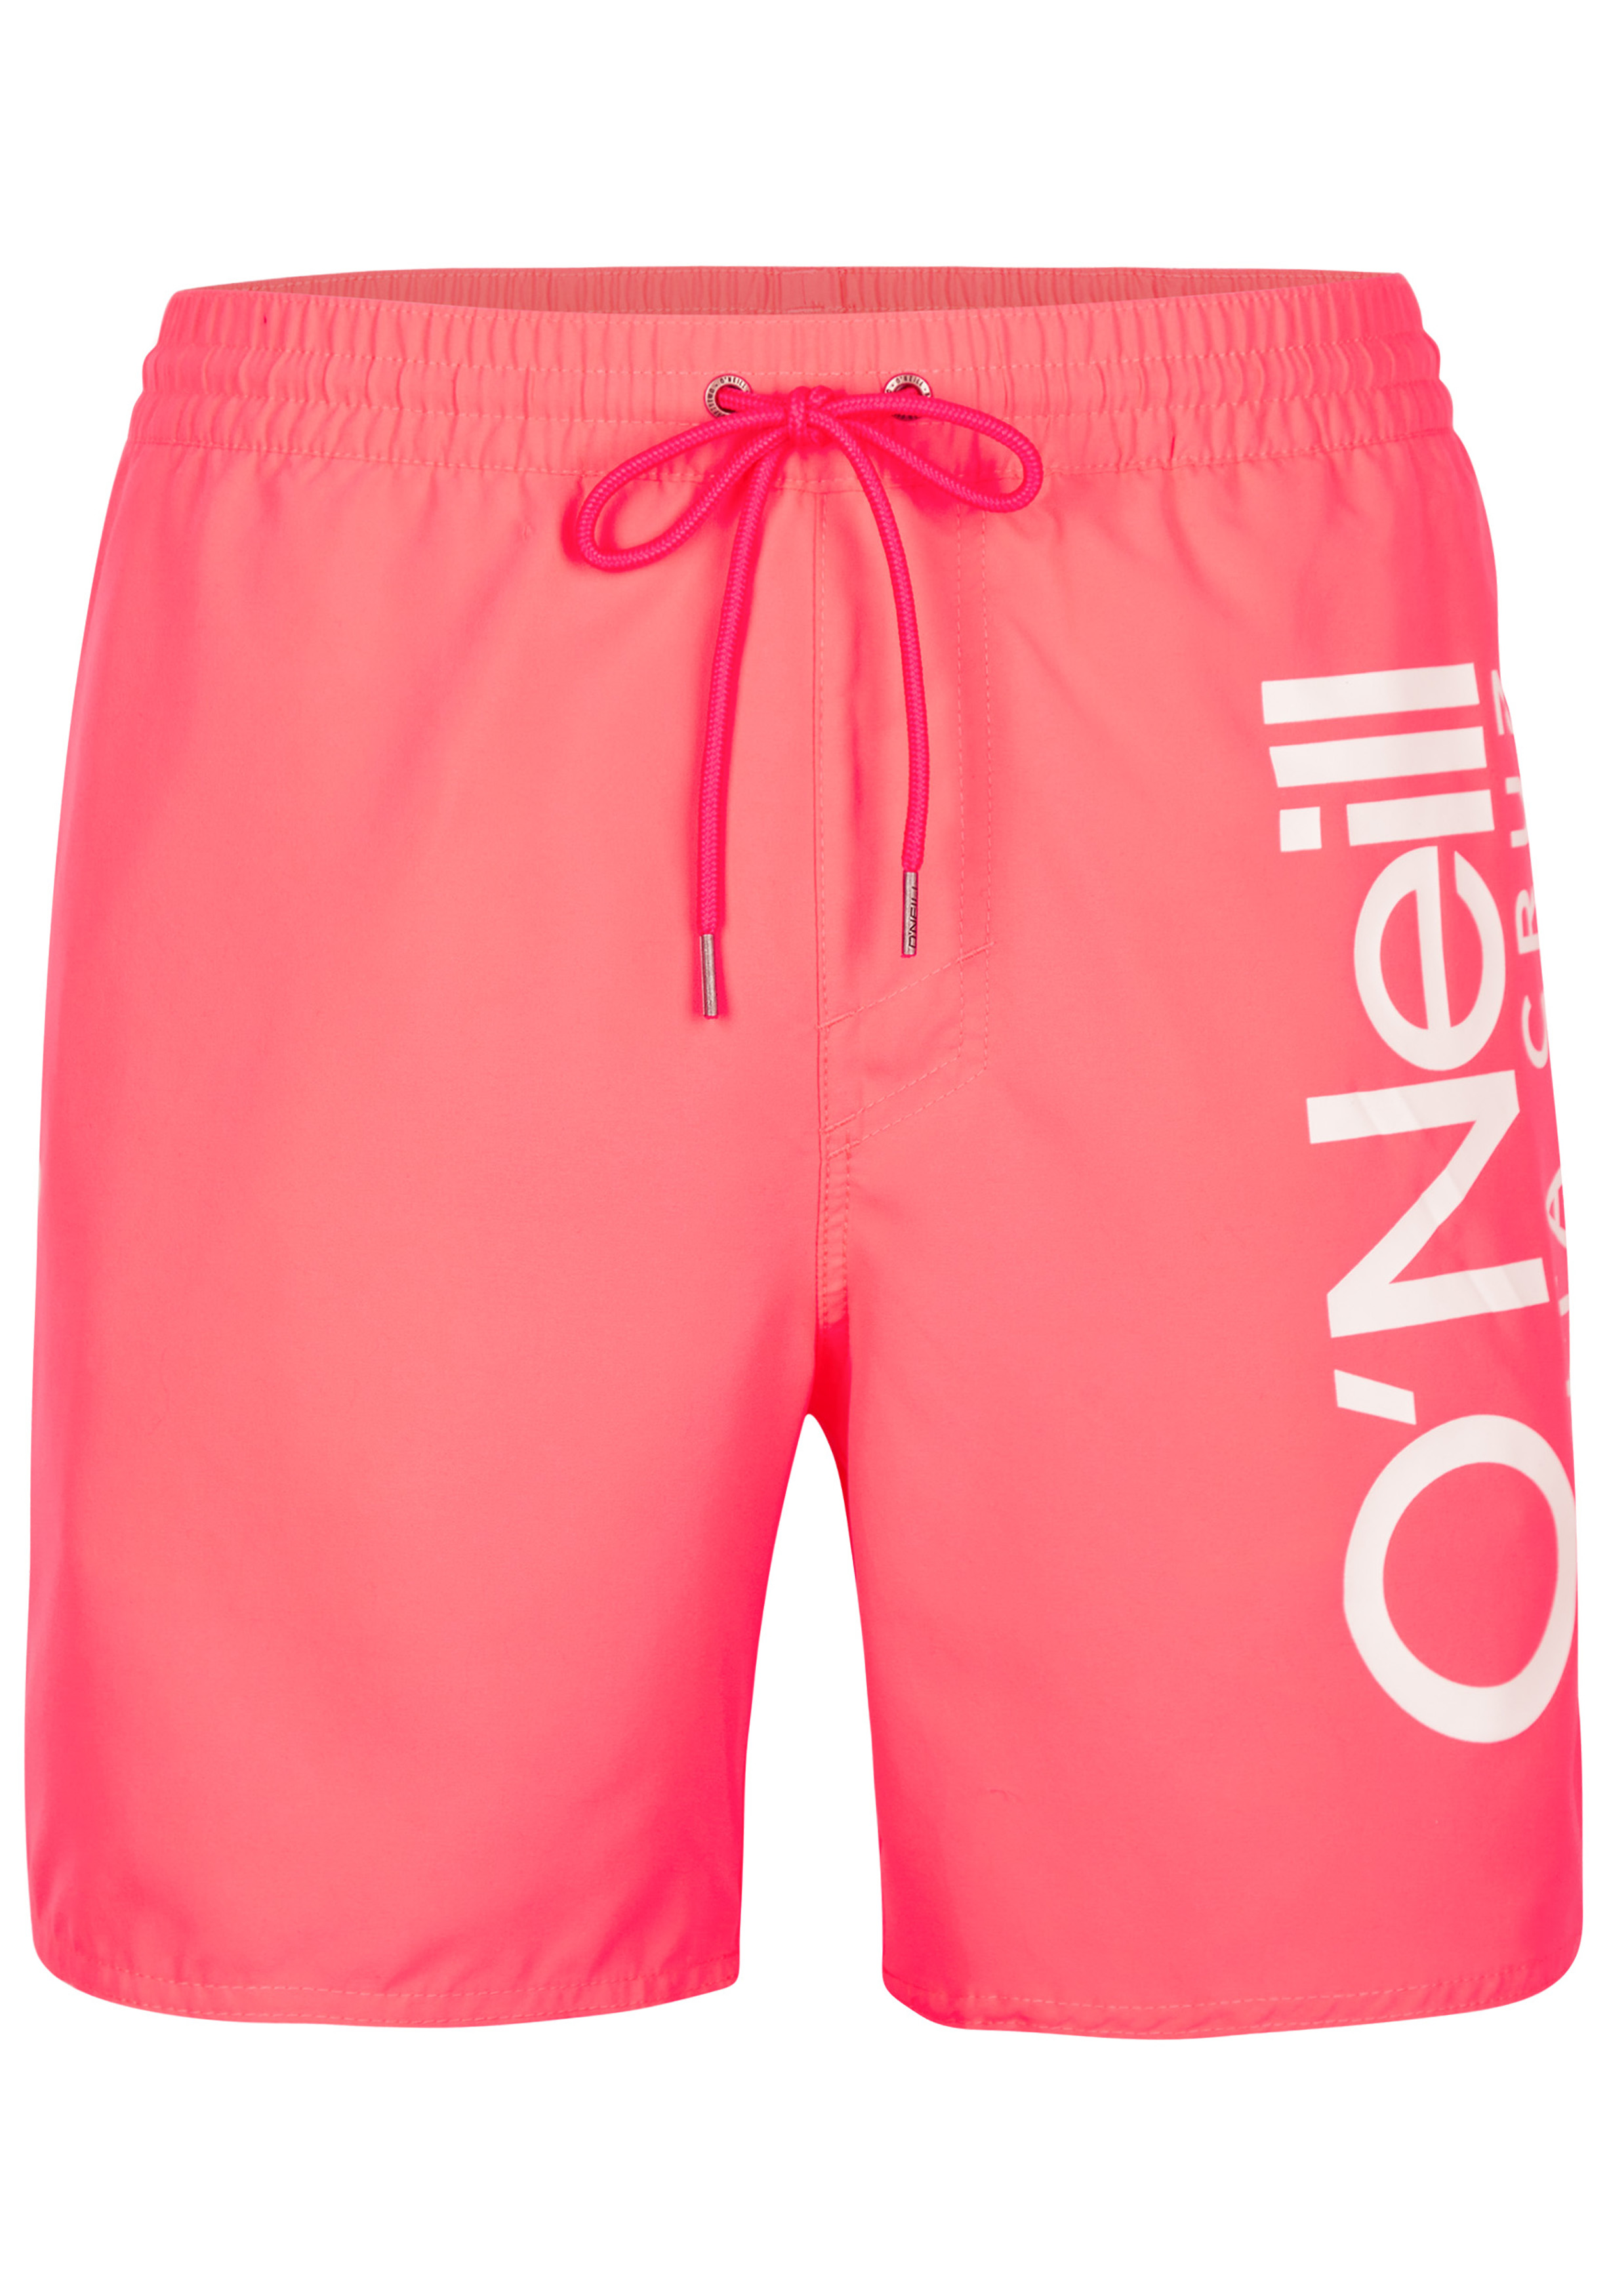 onduidelijk bal meerderheid O'Neill heren zwembroek, Original Cali Shorts, fuchsia roze, Divan - Shop  de nieuwste voorjaarsmode